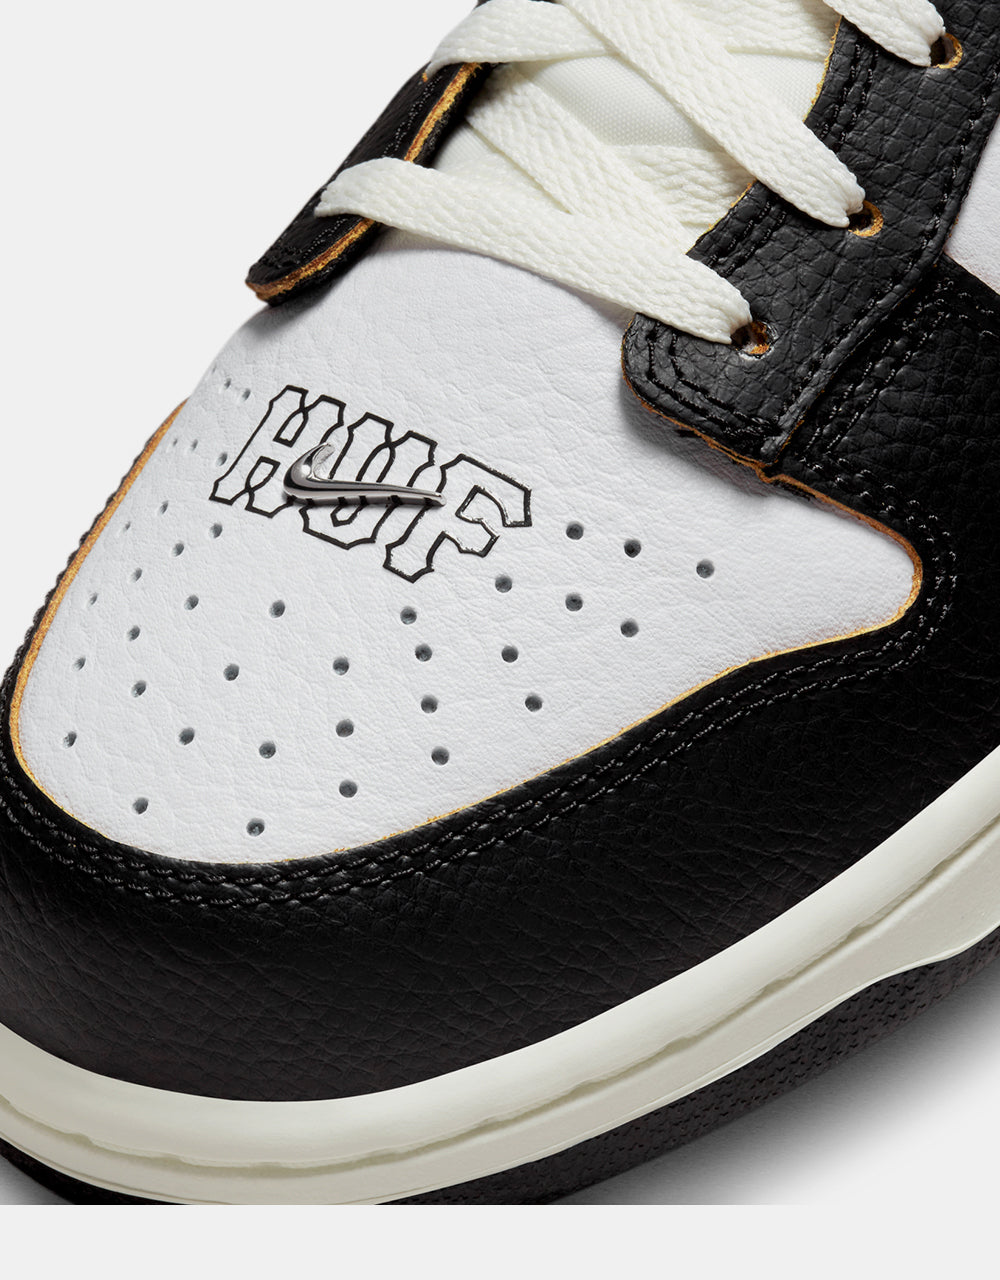 Nike SB 'HUF' Dunk Low OG QS Skate Shoes